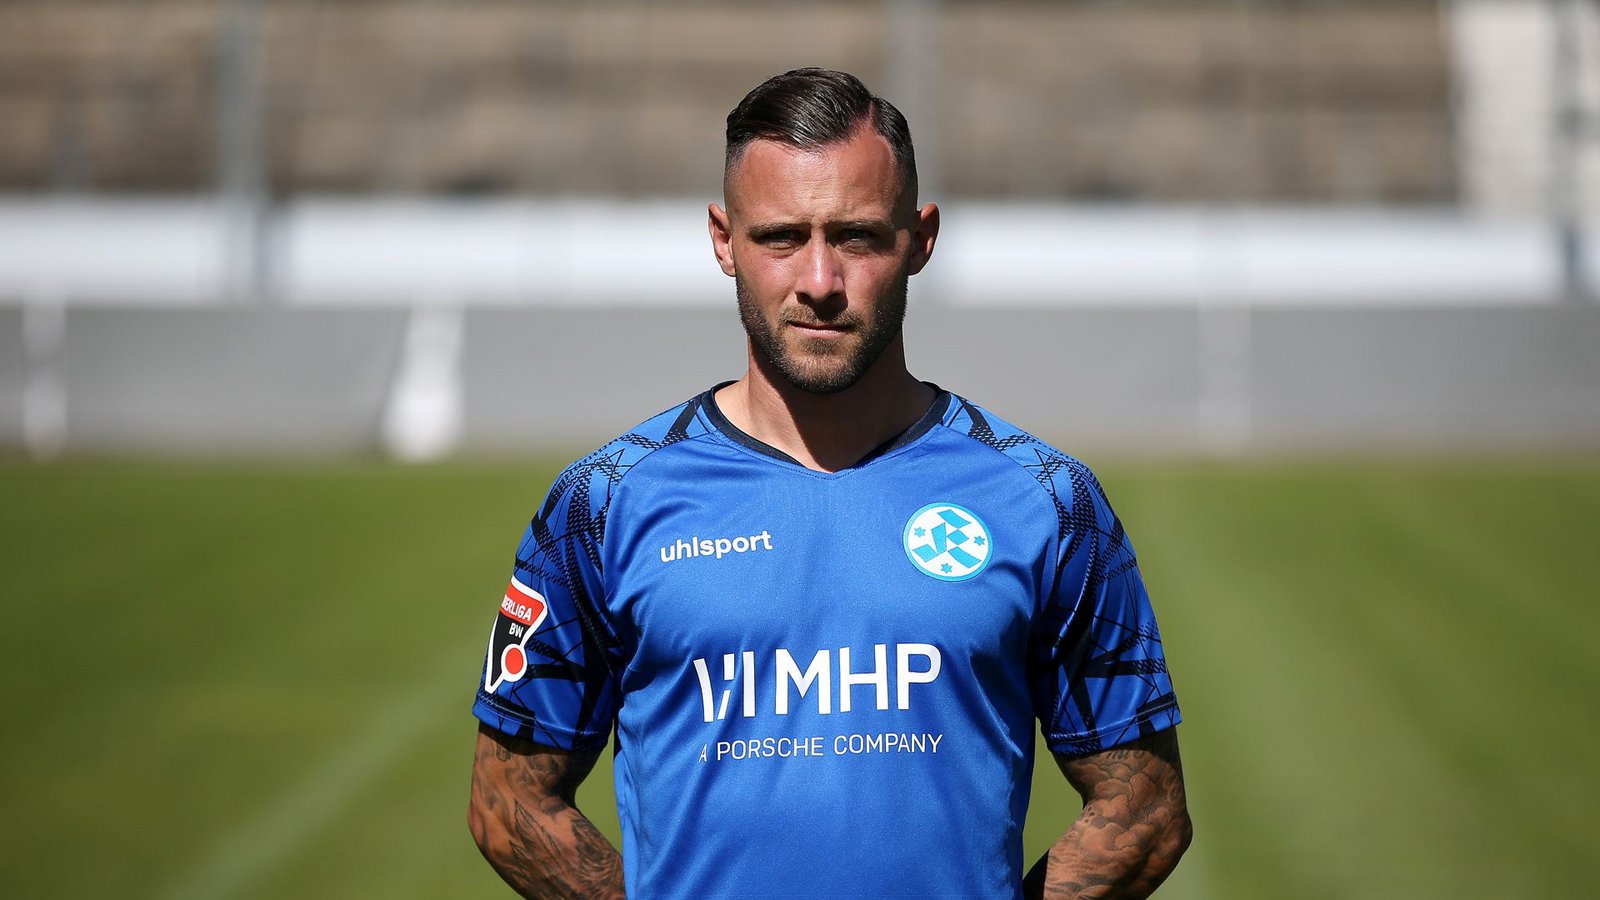 Mittelfeldspieler Lukas Kiefer  (29) spielte zuletzt zwei Jahre lang  beim Regionalligisten SSV Ulm 1846.Foto: Pressefoto Baumann/Alexander Keppler